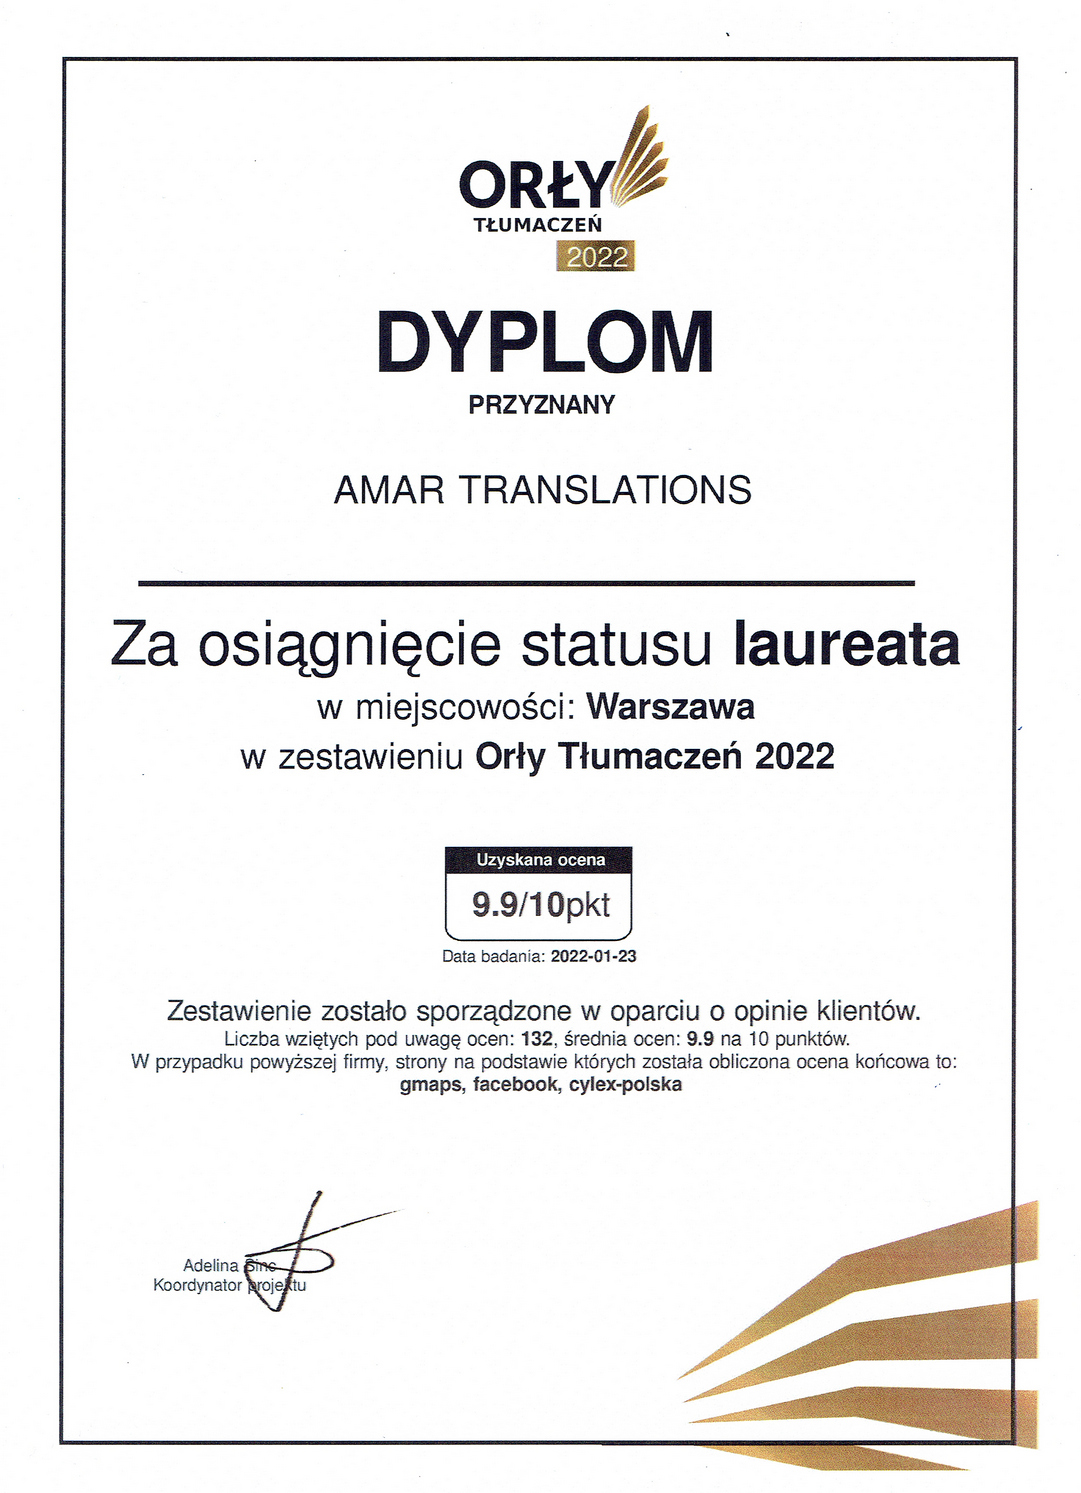 BiuroTlumaczenPrzysielychWarszawaAmaR-TRANSLATIONS-dyplom2